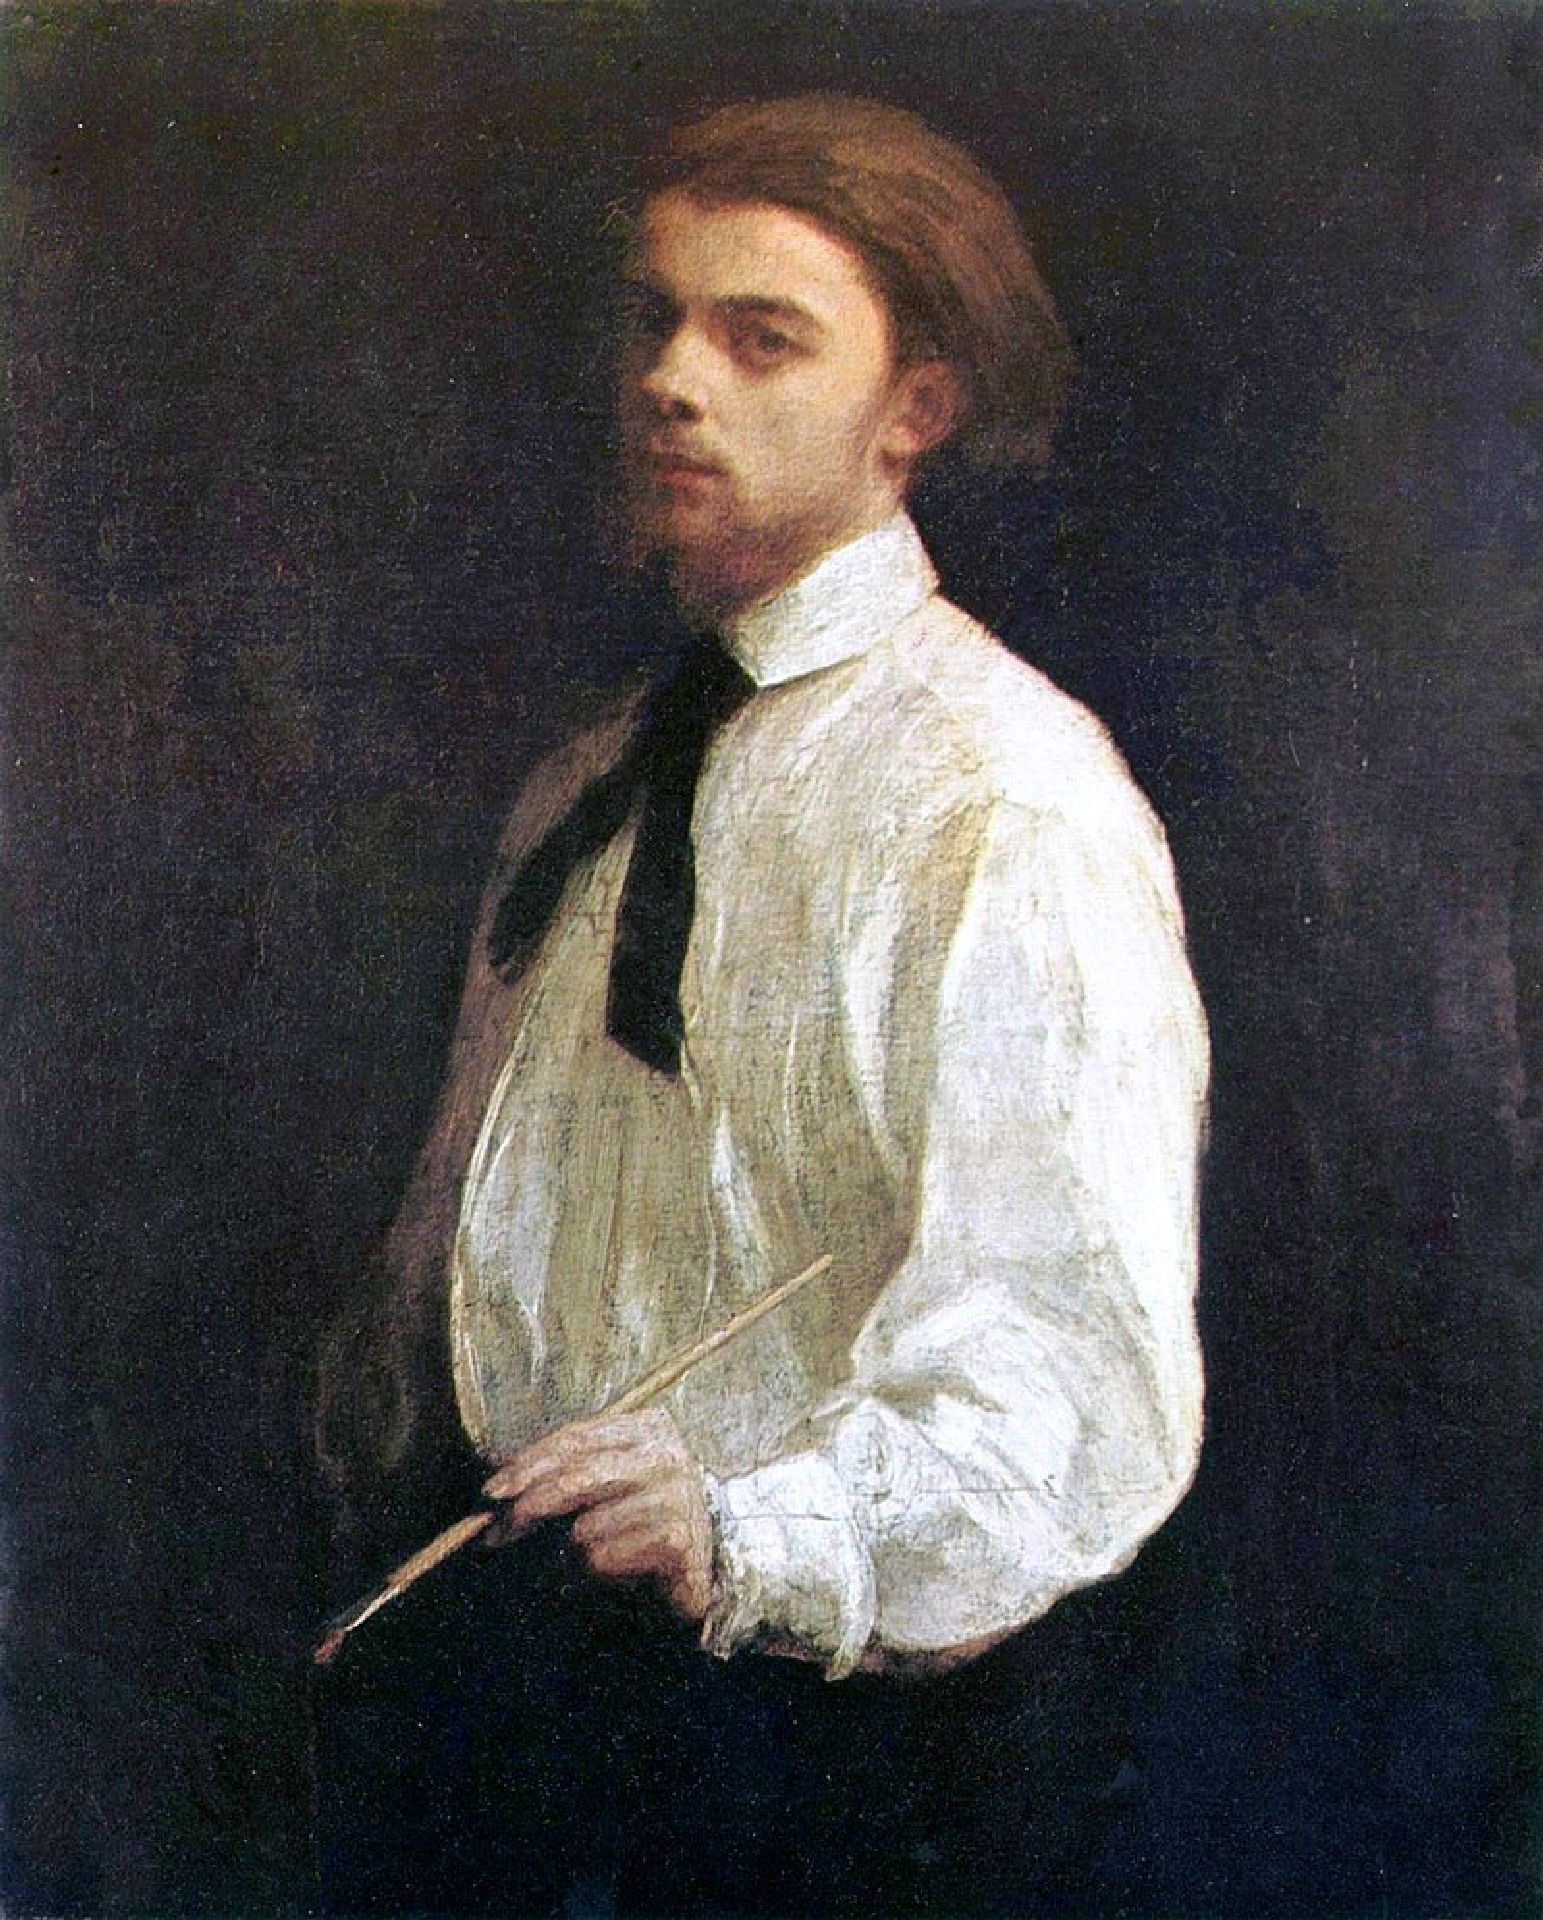 Portret van kunstenaar en kunstschilder Ignace 'Henri' Jean Théodore Fantin-Latour